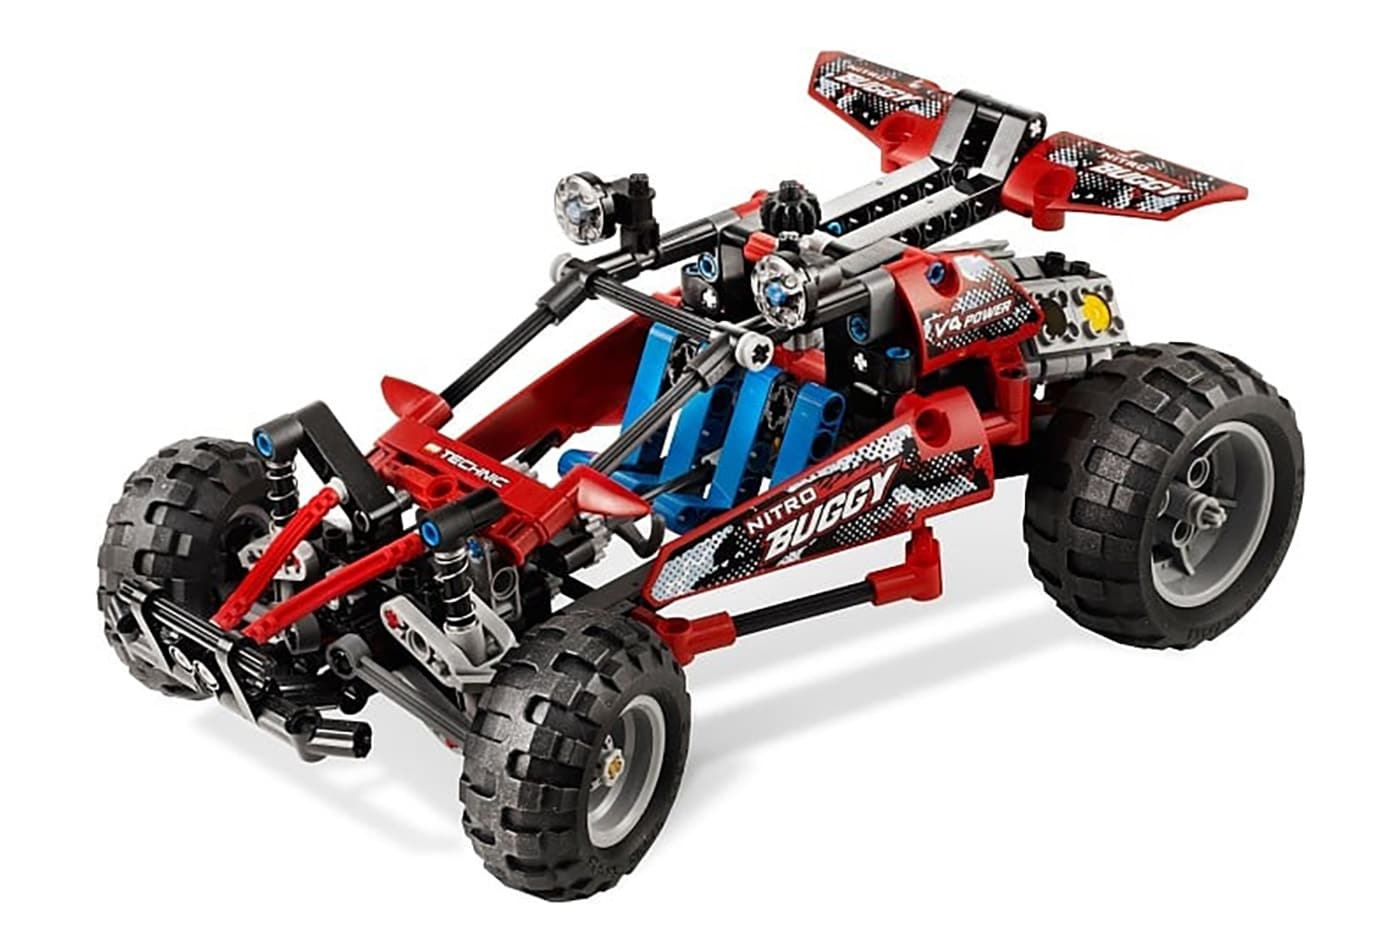 LEGO 8048 Buggy Noppenlose Bauweise